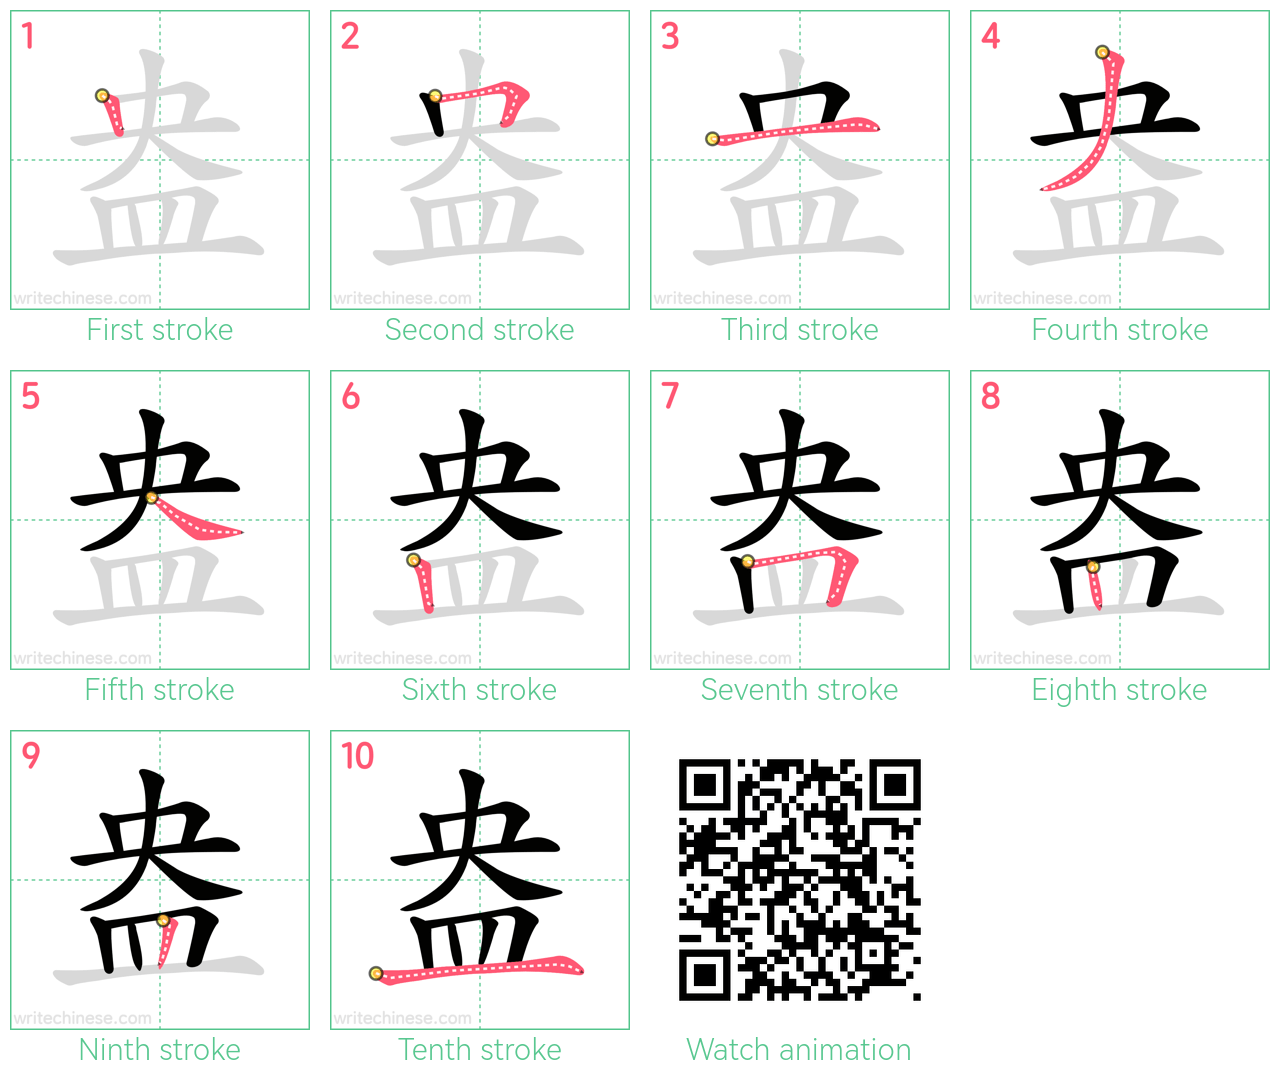 盎 step-by-step stroke order diagrams